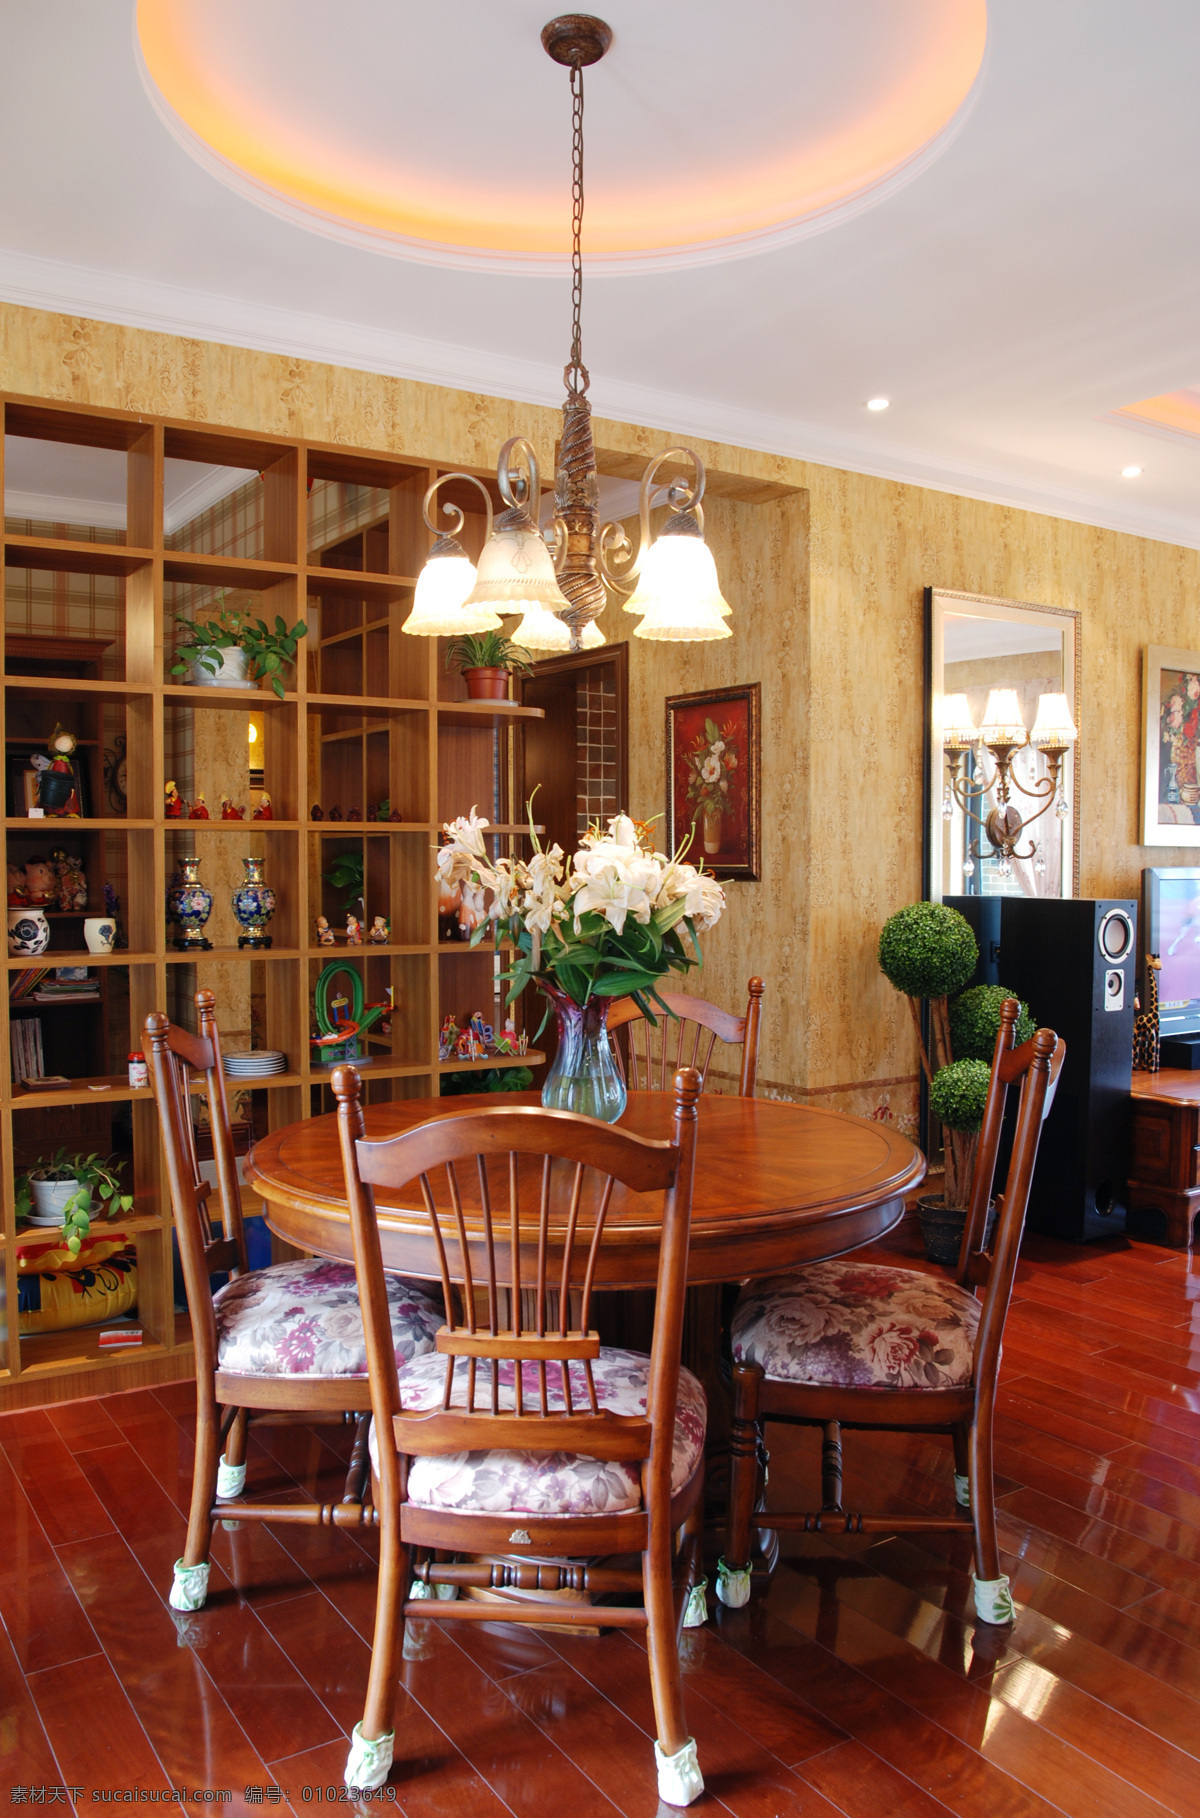 中式 古典 风 室内设计 餐厅 博古架 隔断 效果图 简约 餐桌 白色 调 现代 家装 吊灯